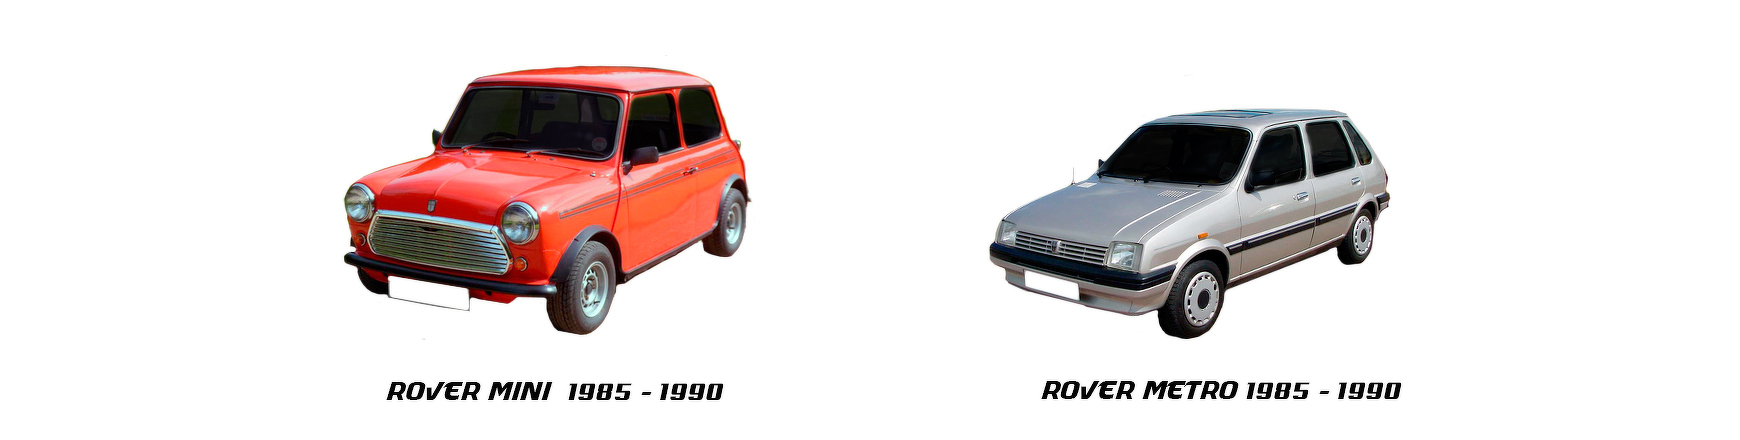 Piezas y Recambios de Rover Mini Metro de 1985 a 1990 | Veramauto.es